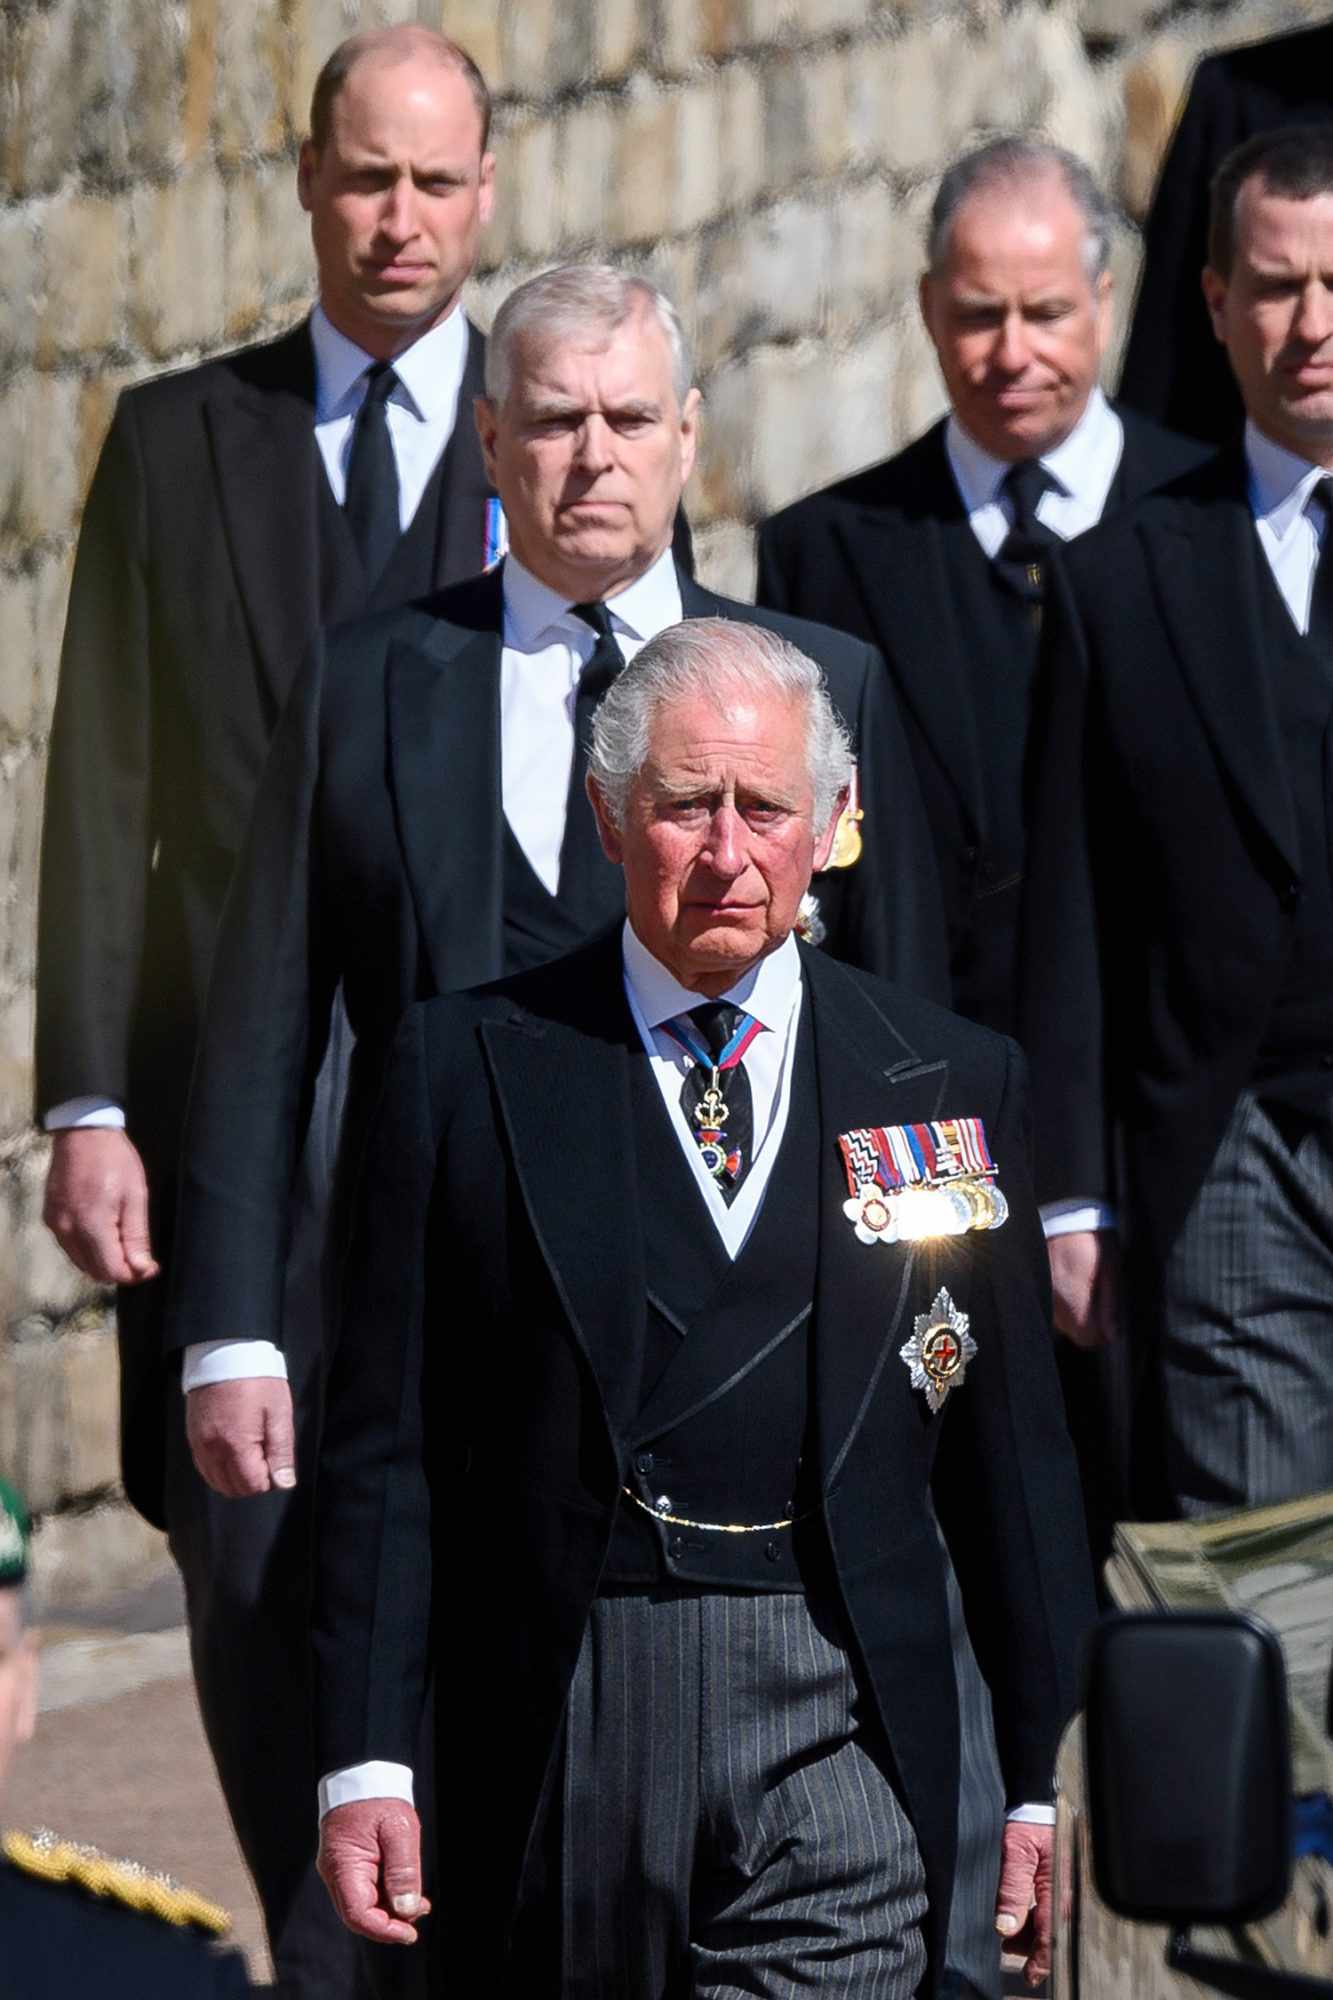 Pangeran Charles Mengambil Alih Perlindungan Kerajaan Lain dari Saudara Pangeran Andrew Setelah Skandal Epstein